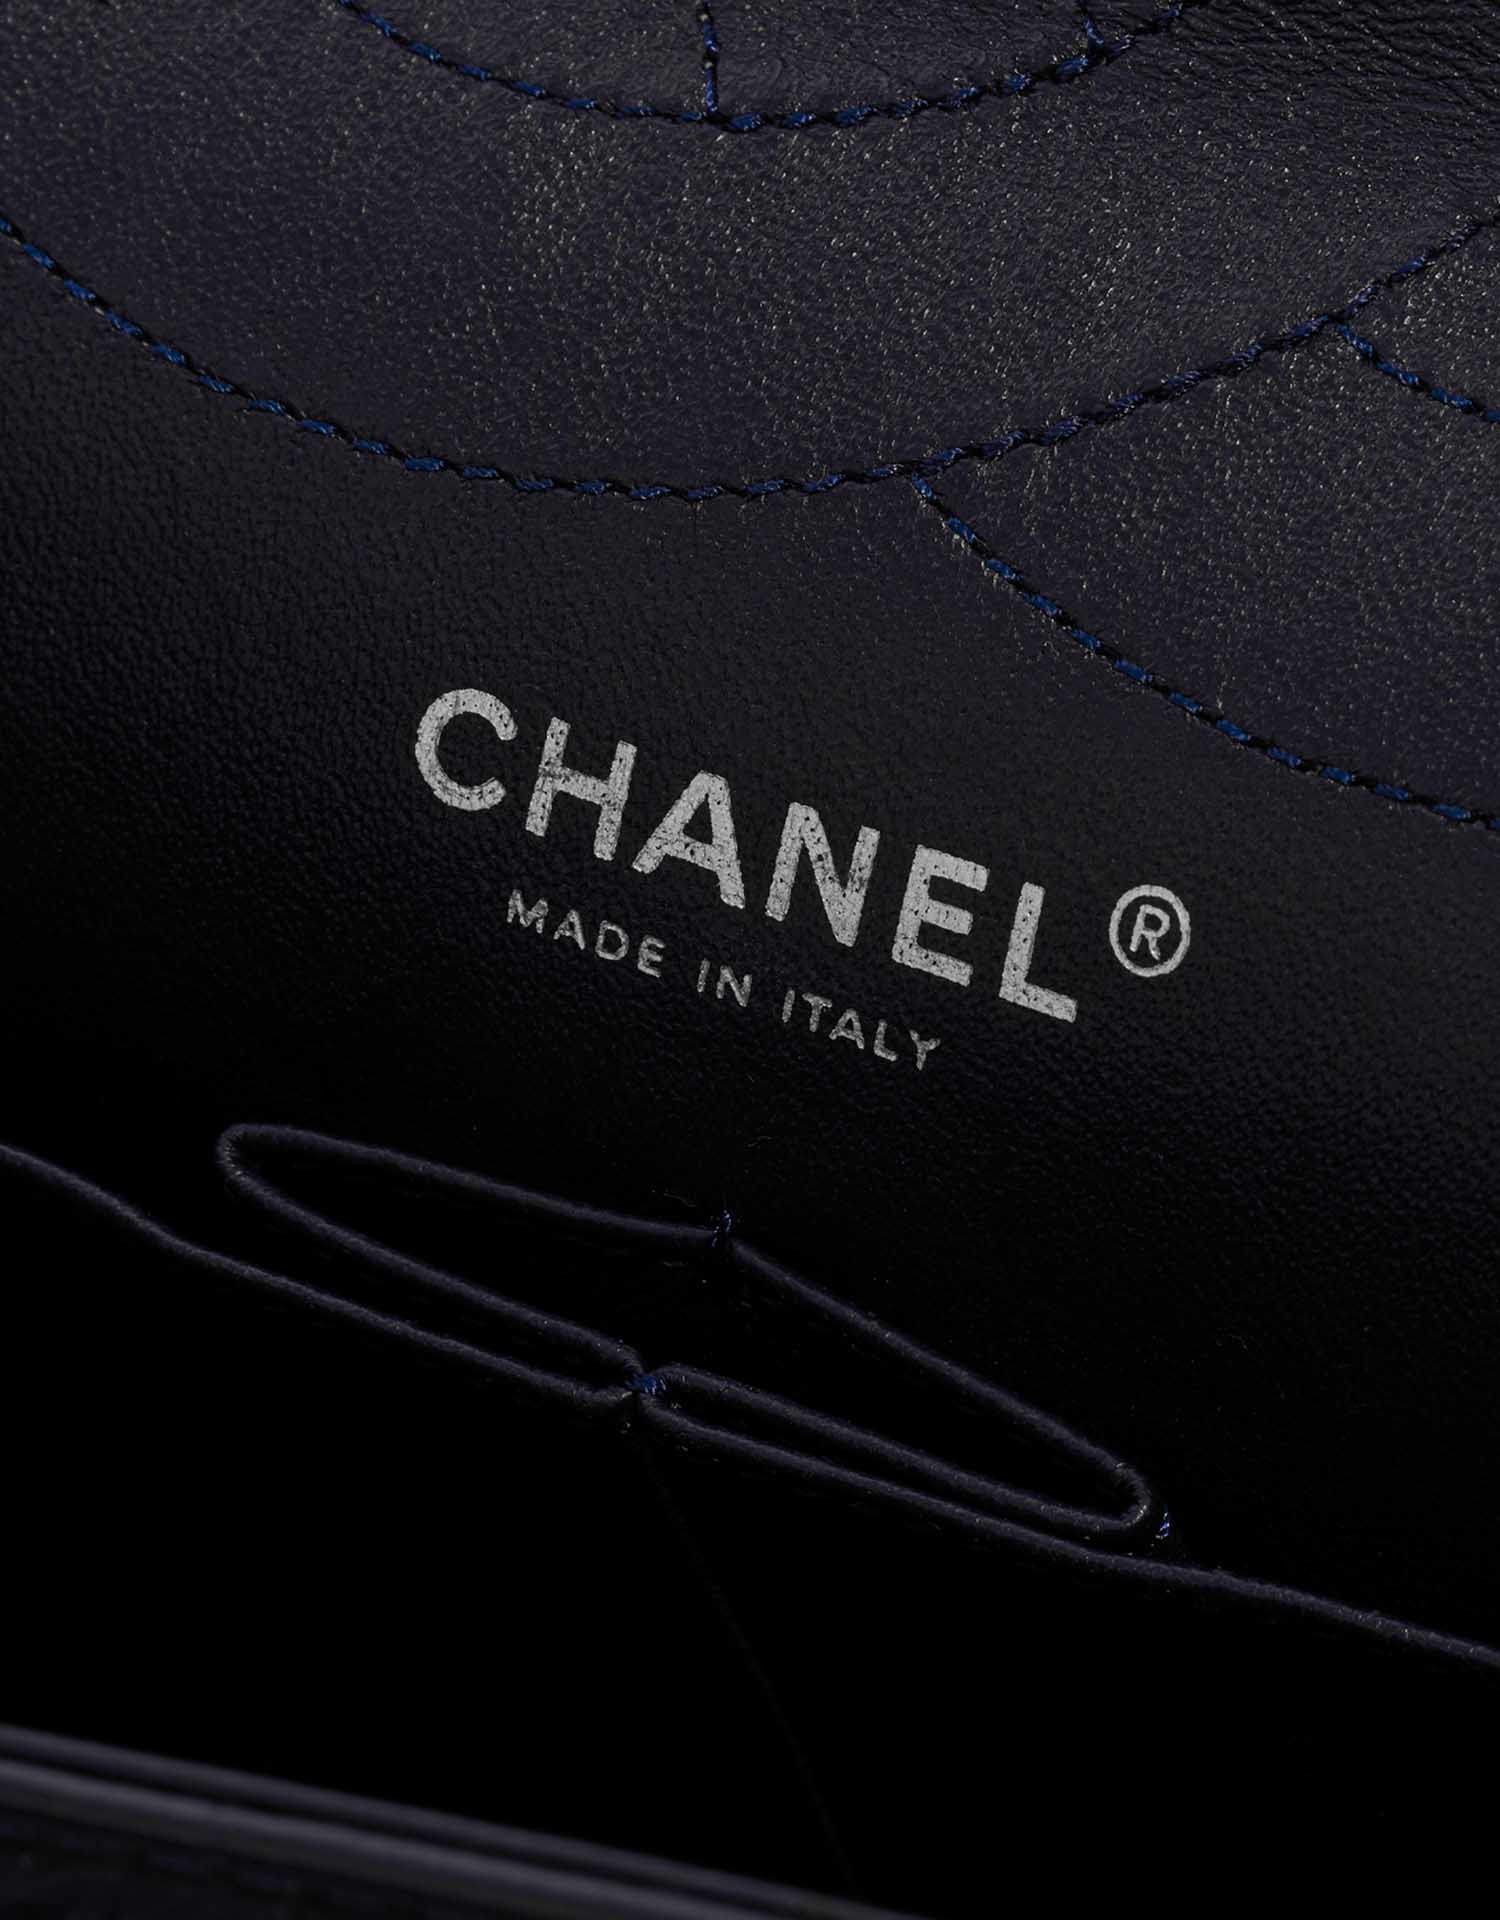 Sac Chanel d'occasion 2.55 Reissue 227 Cuir de veau vieilli Bleu foncé Logo Vendez votre sac de créateur sur Saclab.com